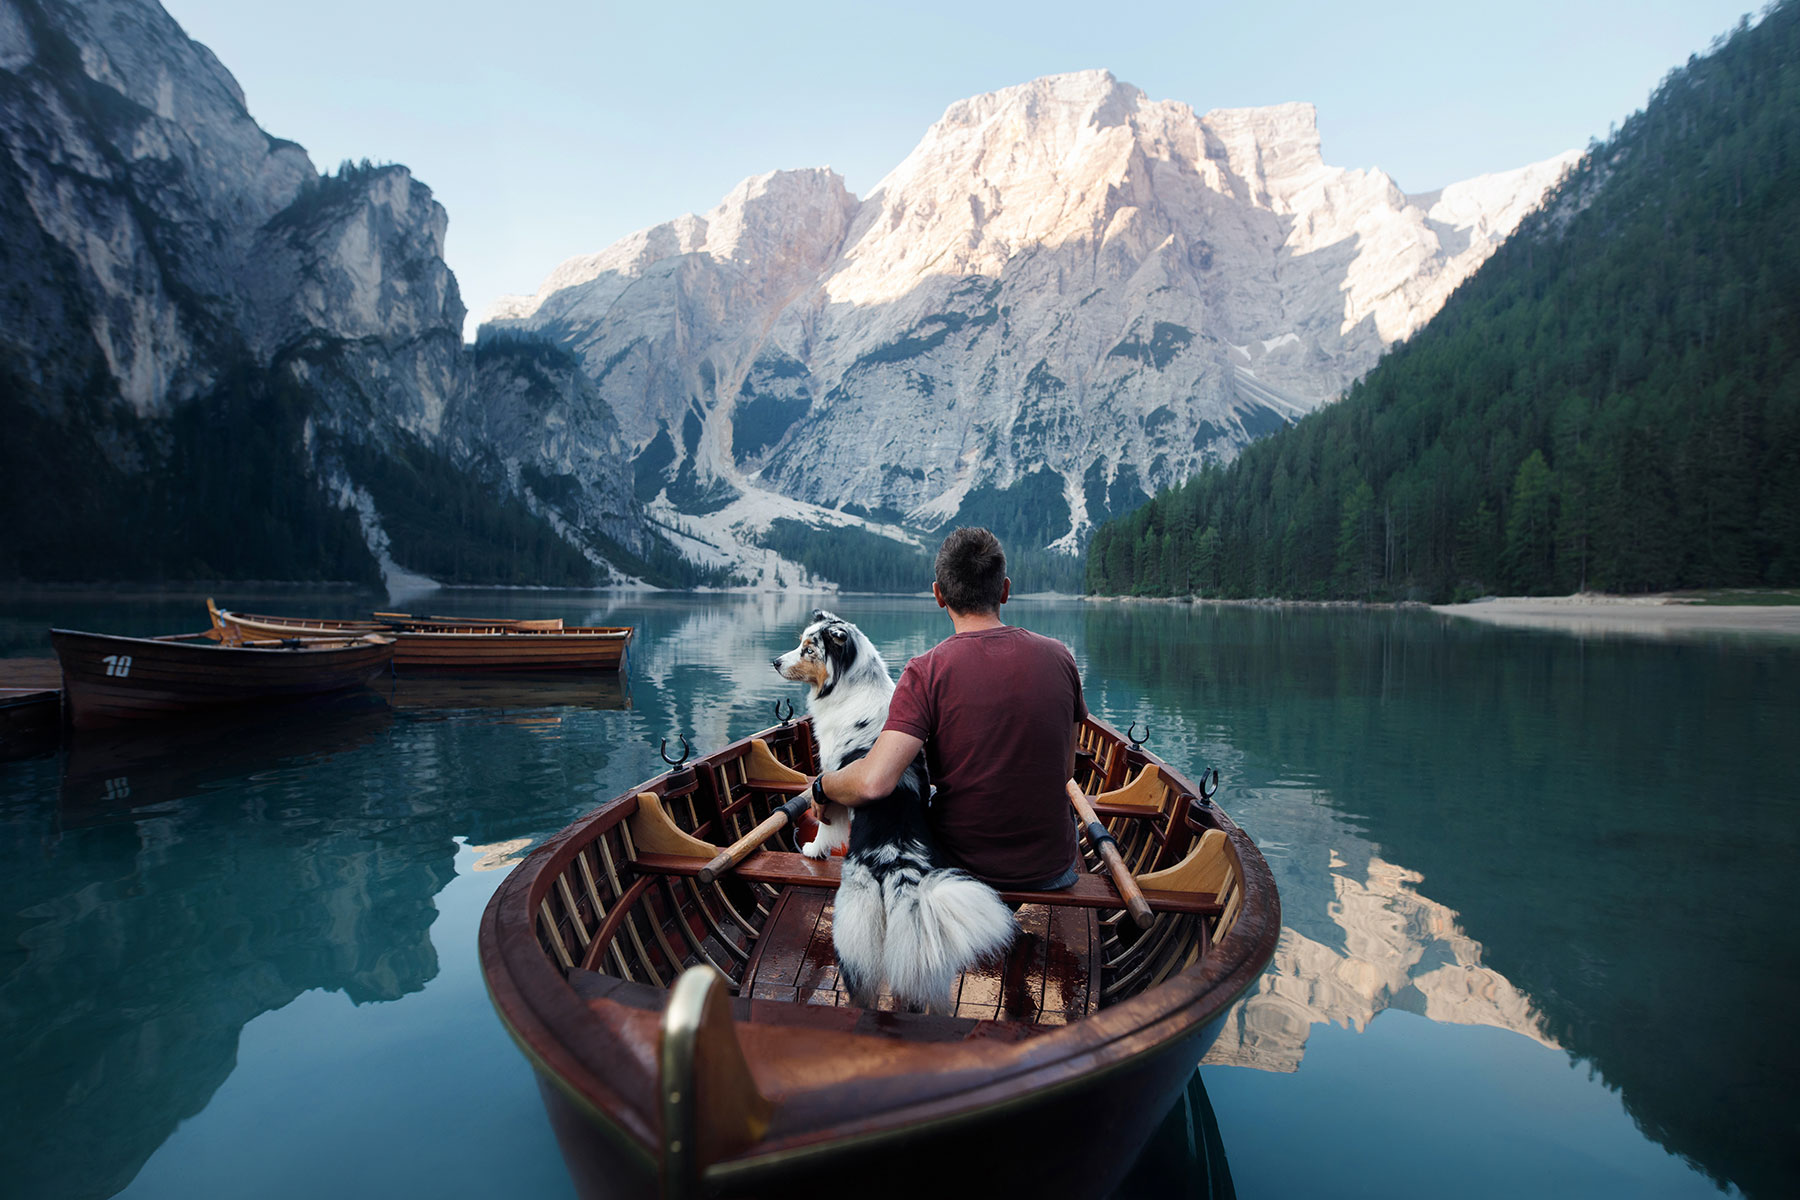 mann mit hund im ruder-boot auf see mit bergen drumherum